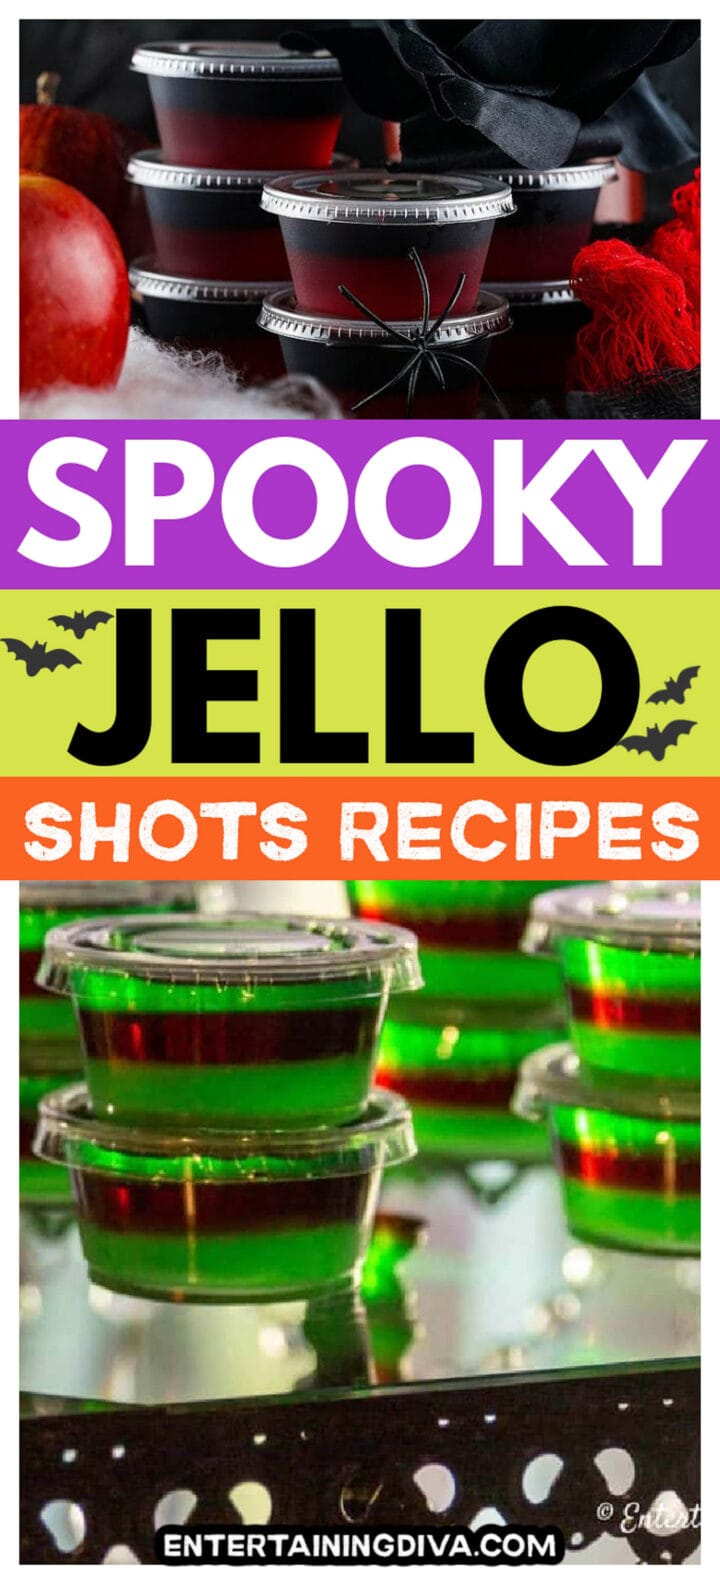 Halloween-themed jello shots recipes.